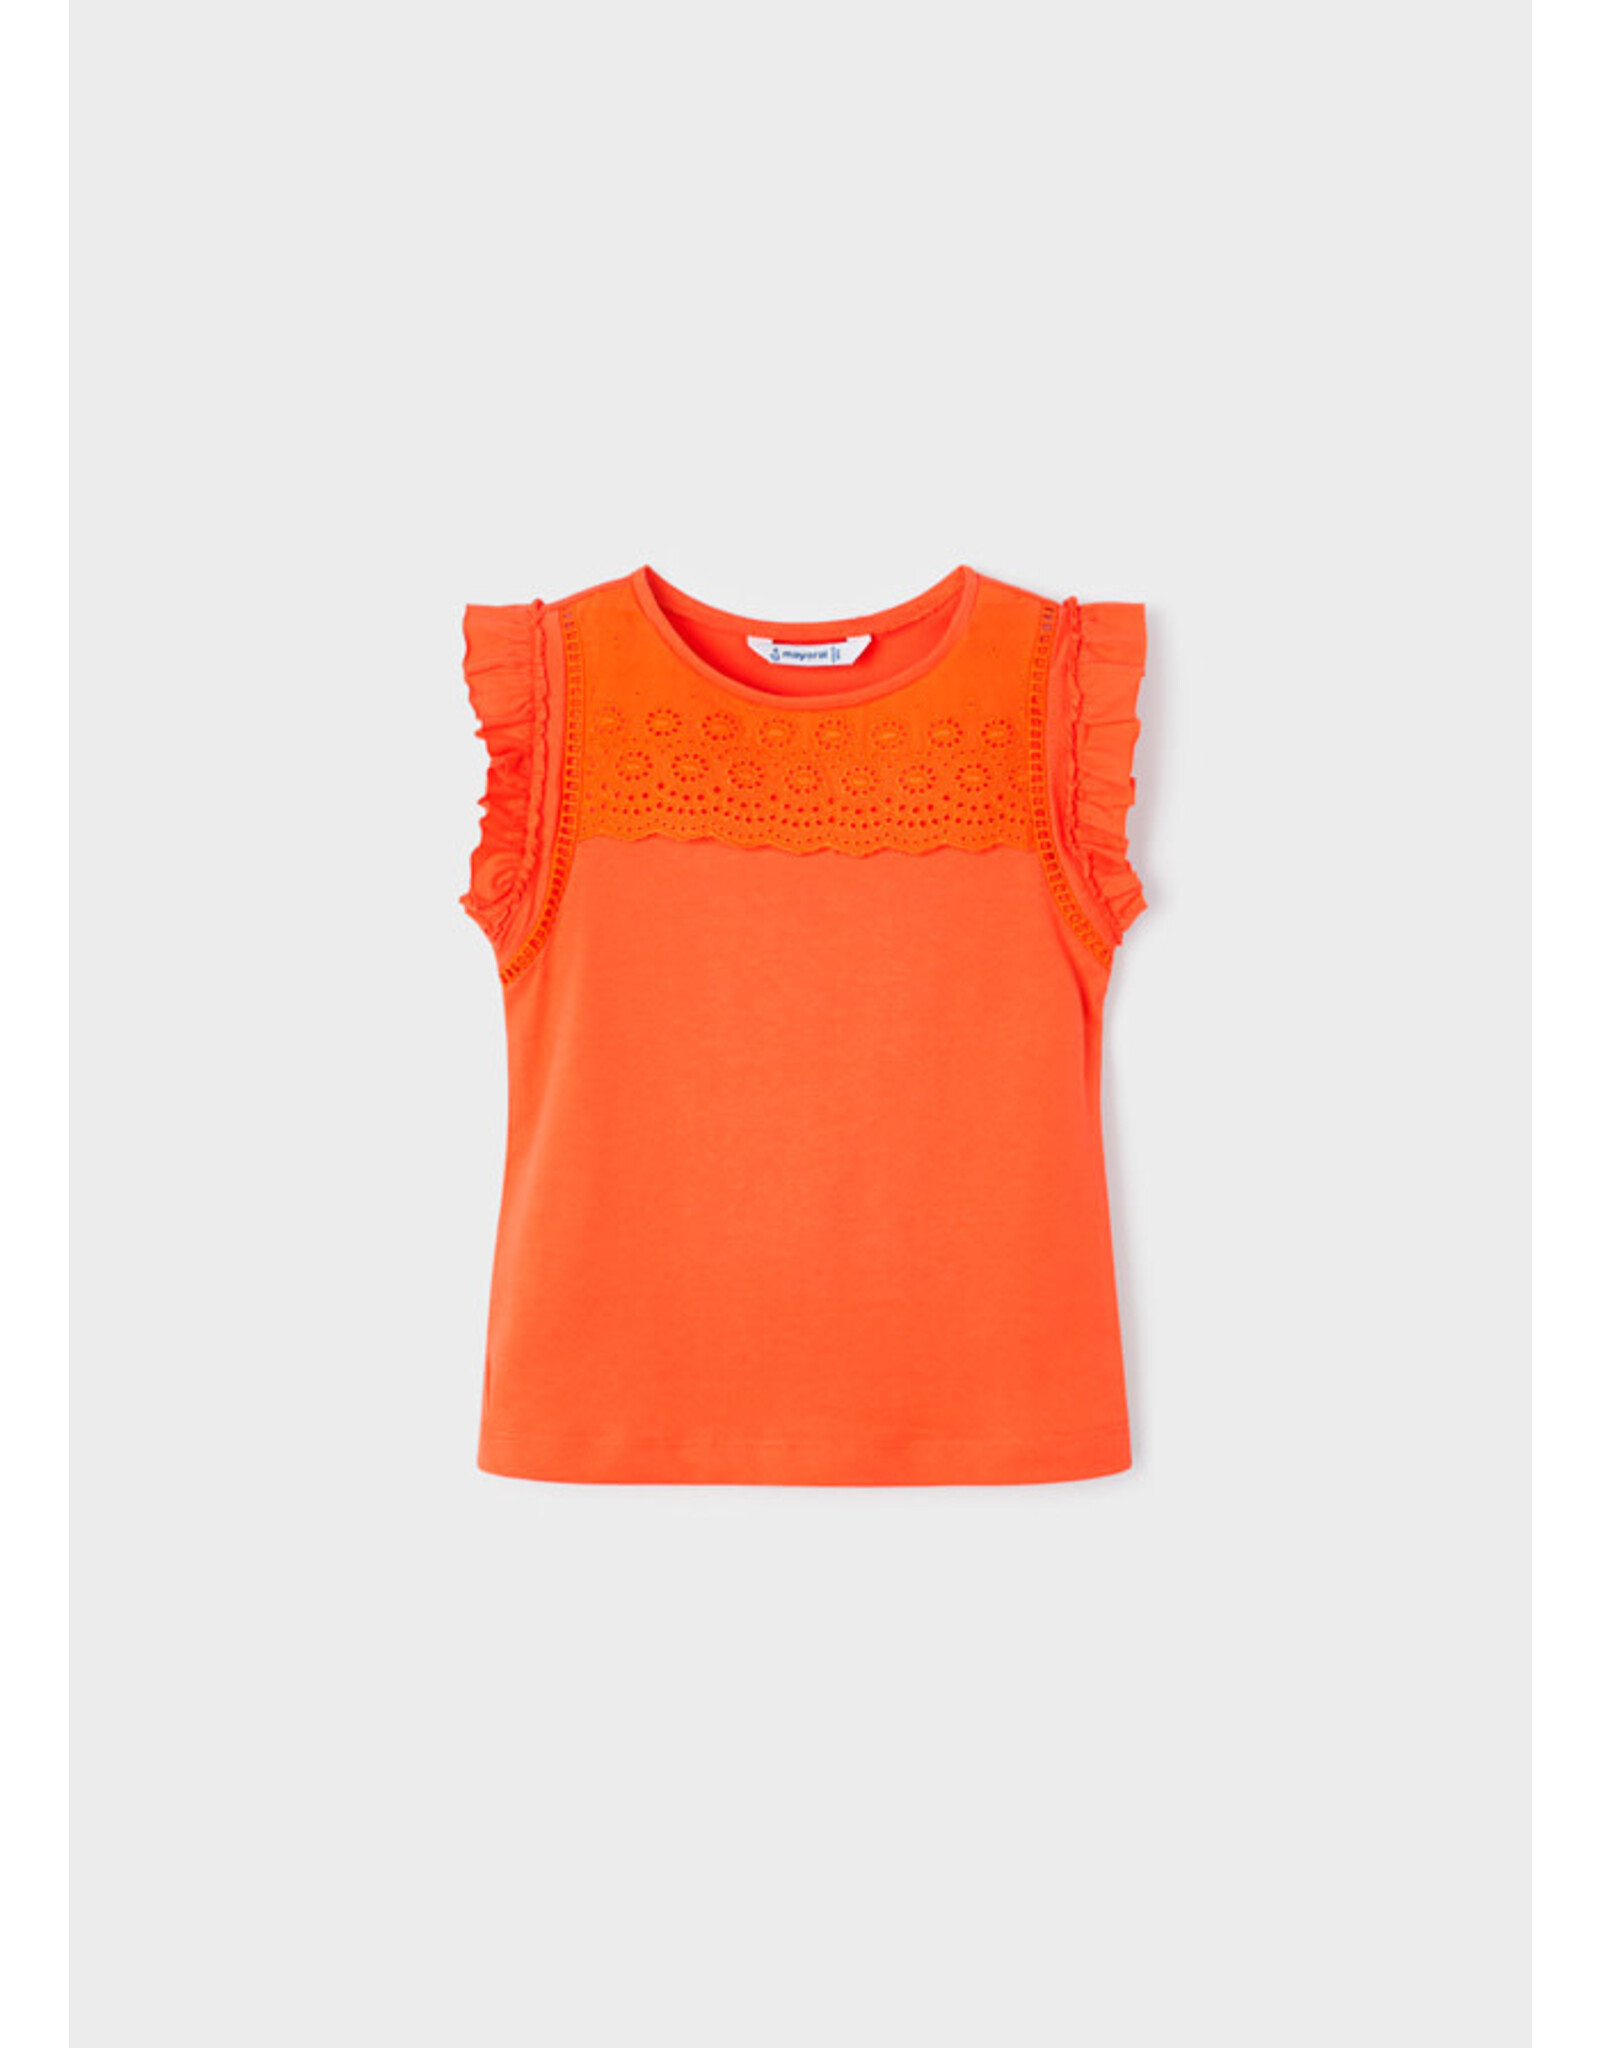 Mayoral Orange T-Shirt w/Lace Shoulder